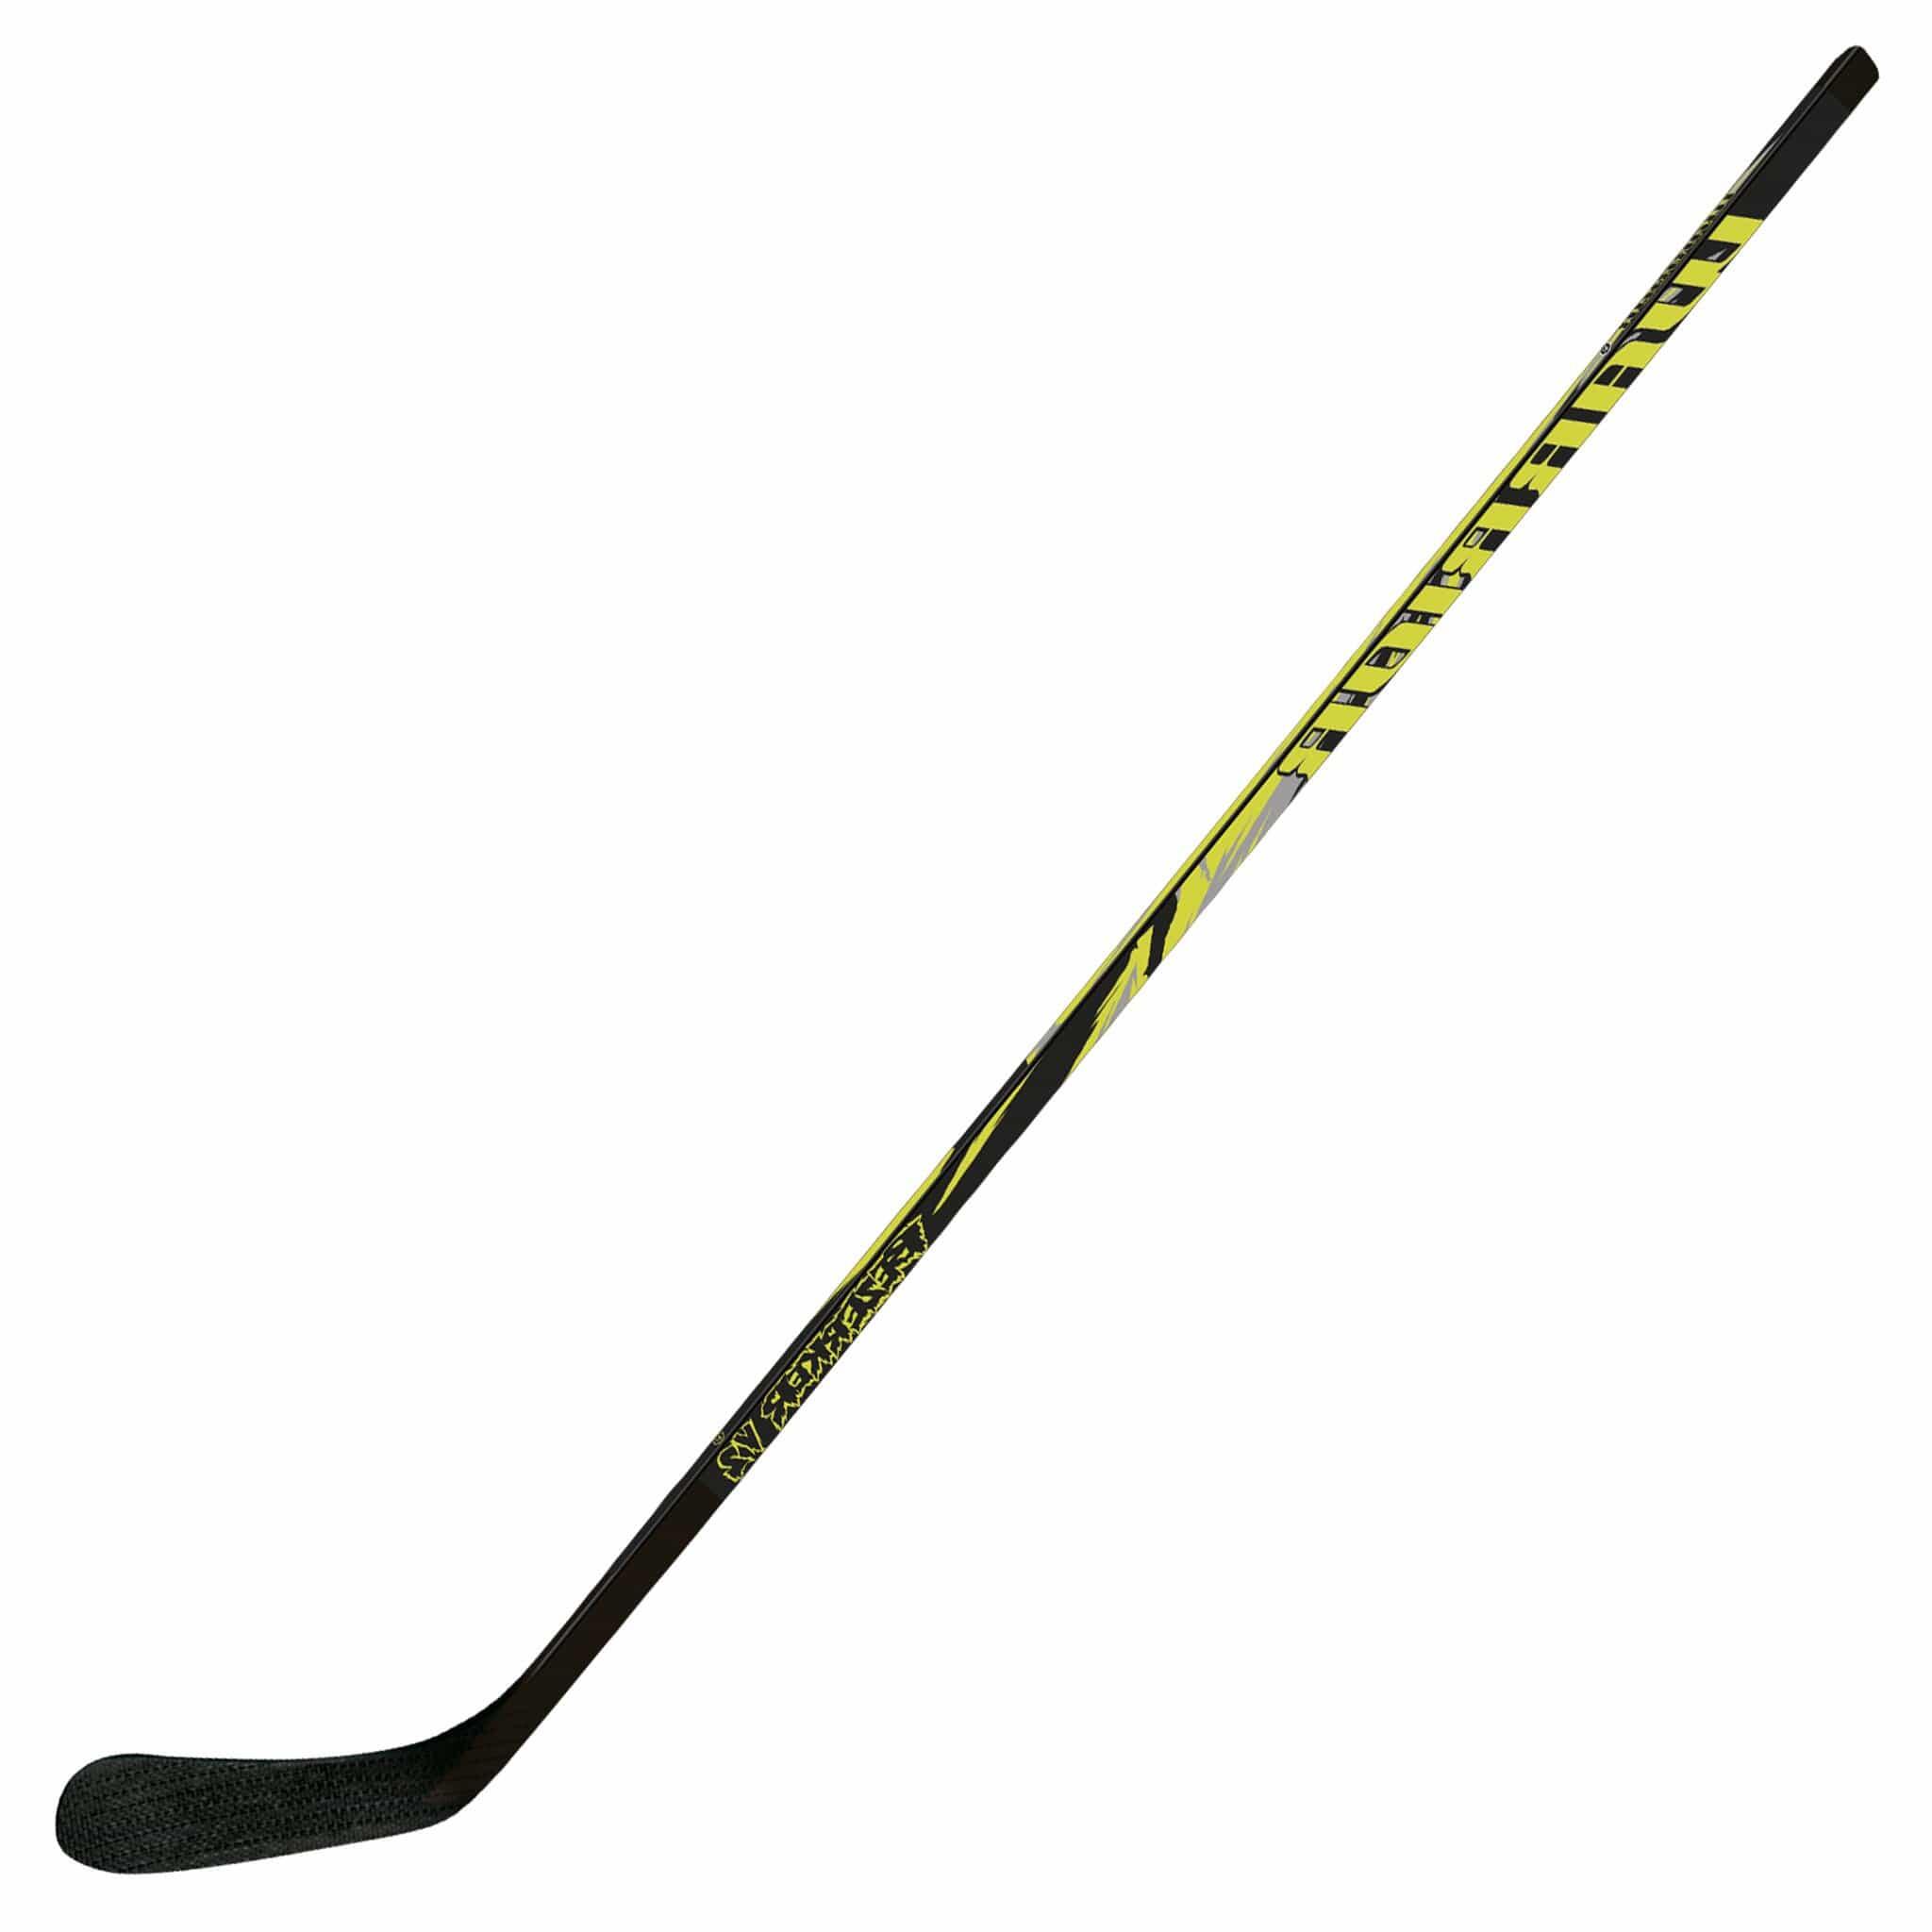 Warrior Bezerker V2 Wooden Hockey Stick - Junior Right Hand 1/1